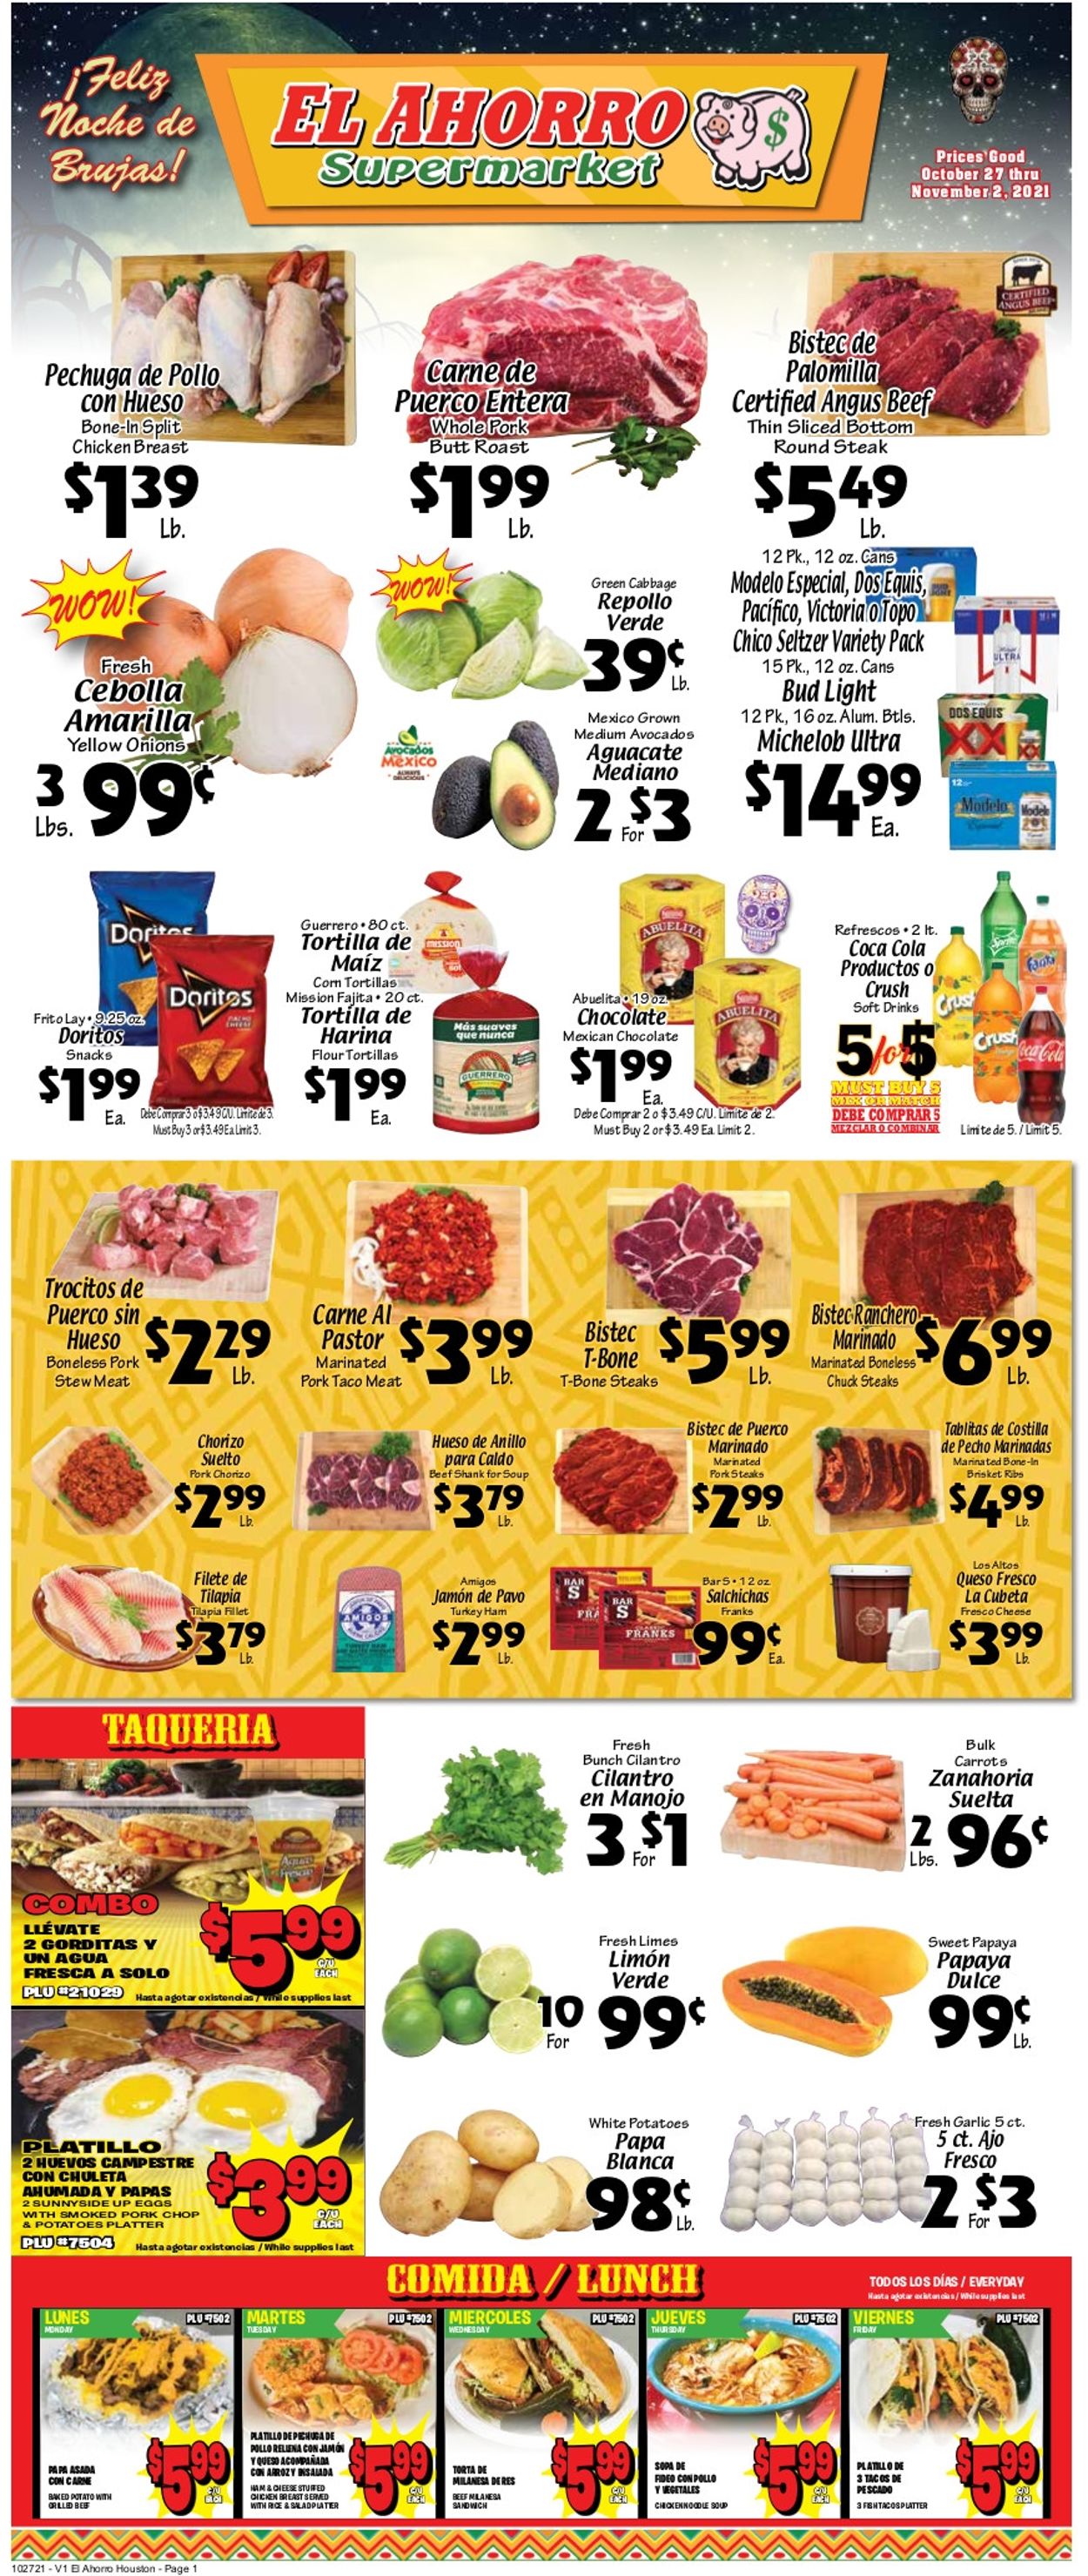 El Ahorro Supermarket Ad from 10/27/2021